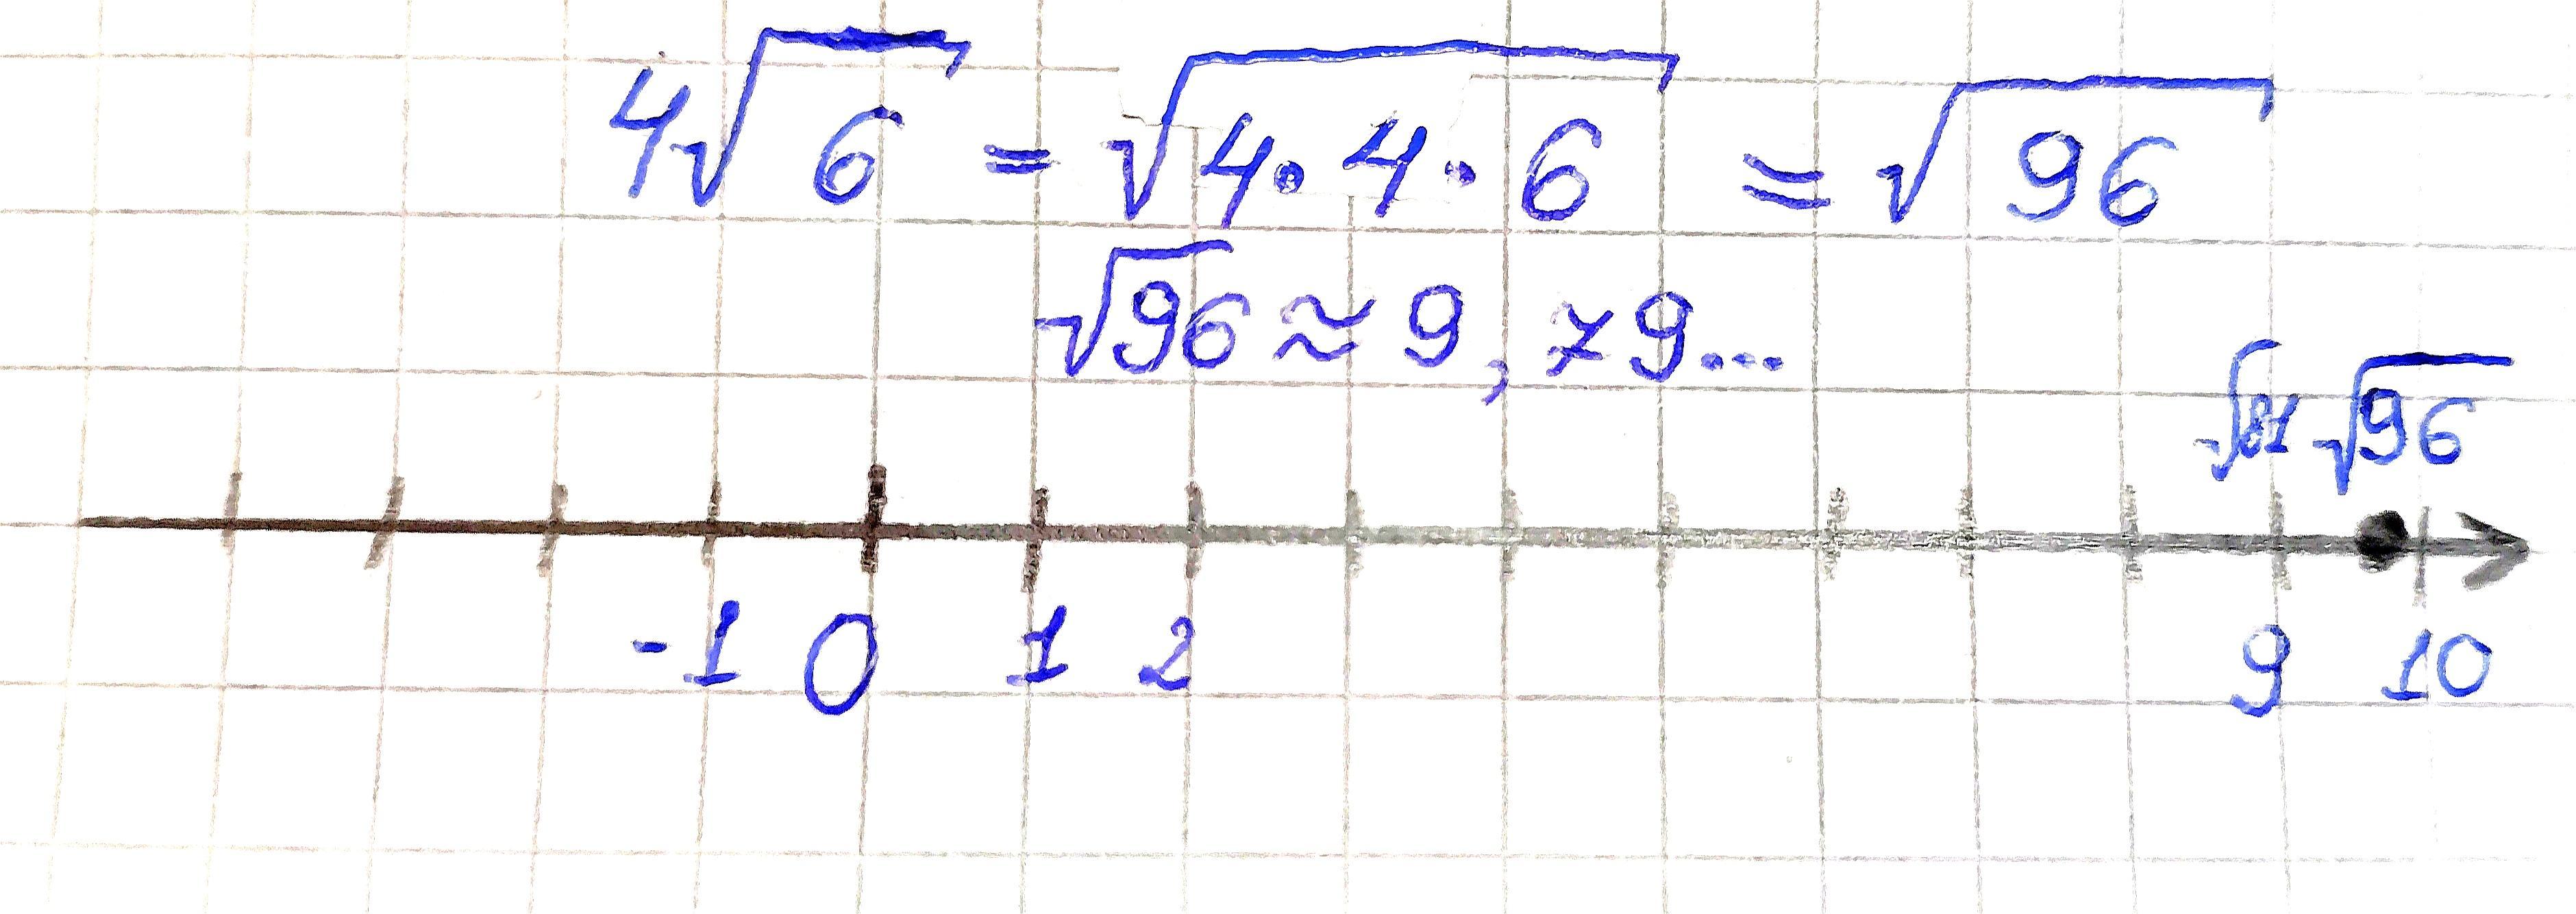 Отметьте на координатной прямой число корень 26. Отметьте на координатной прямой число 4 6.. Отметьте на координатной прямой число √34. Отметьте на координатной прямой число 4√11. Отметь на координатной прямой число √178.